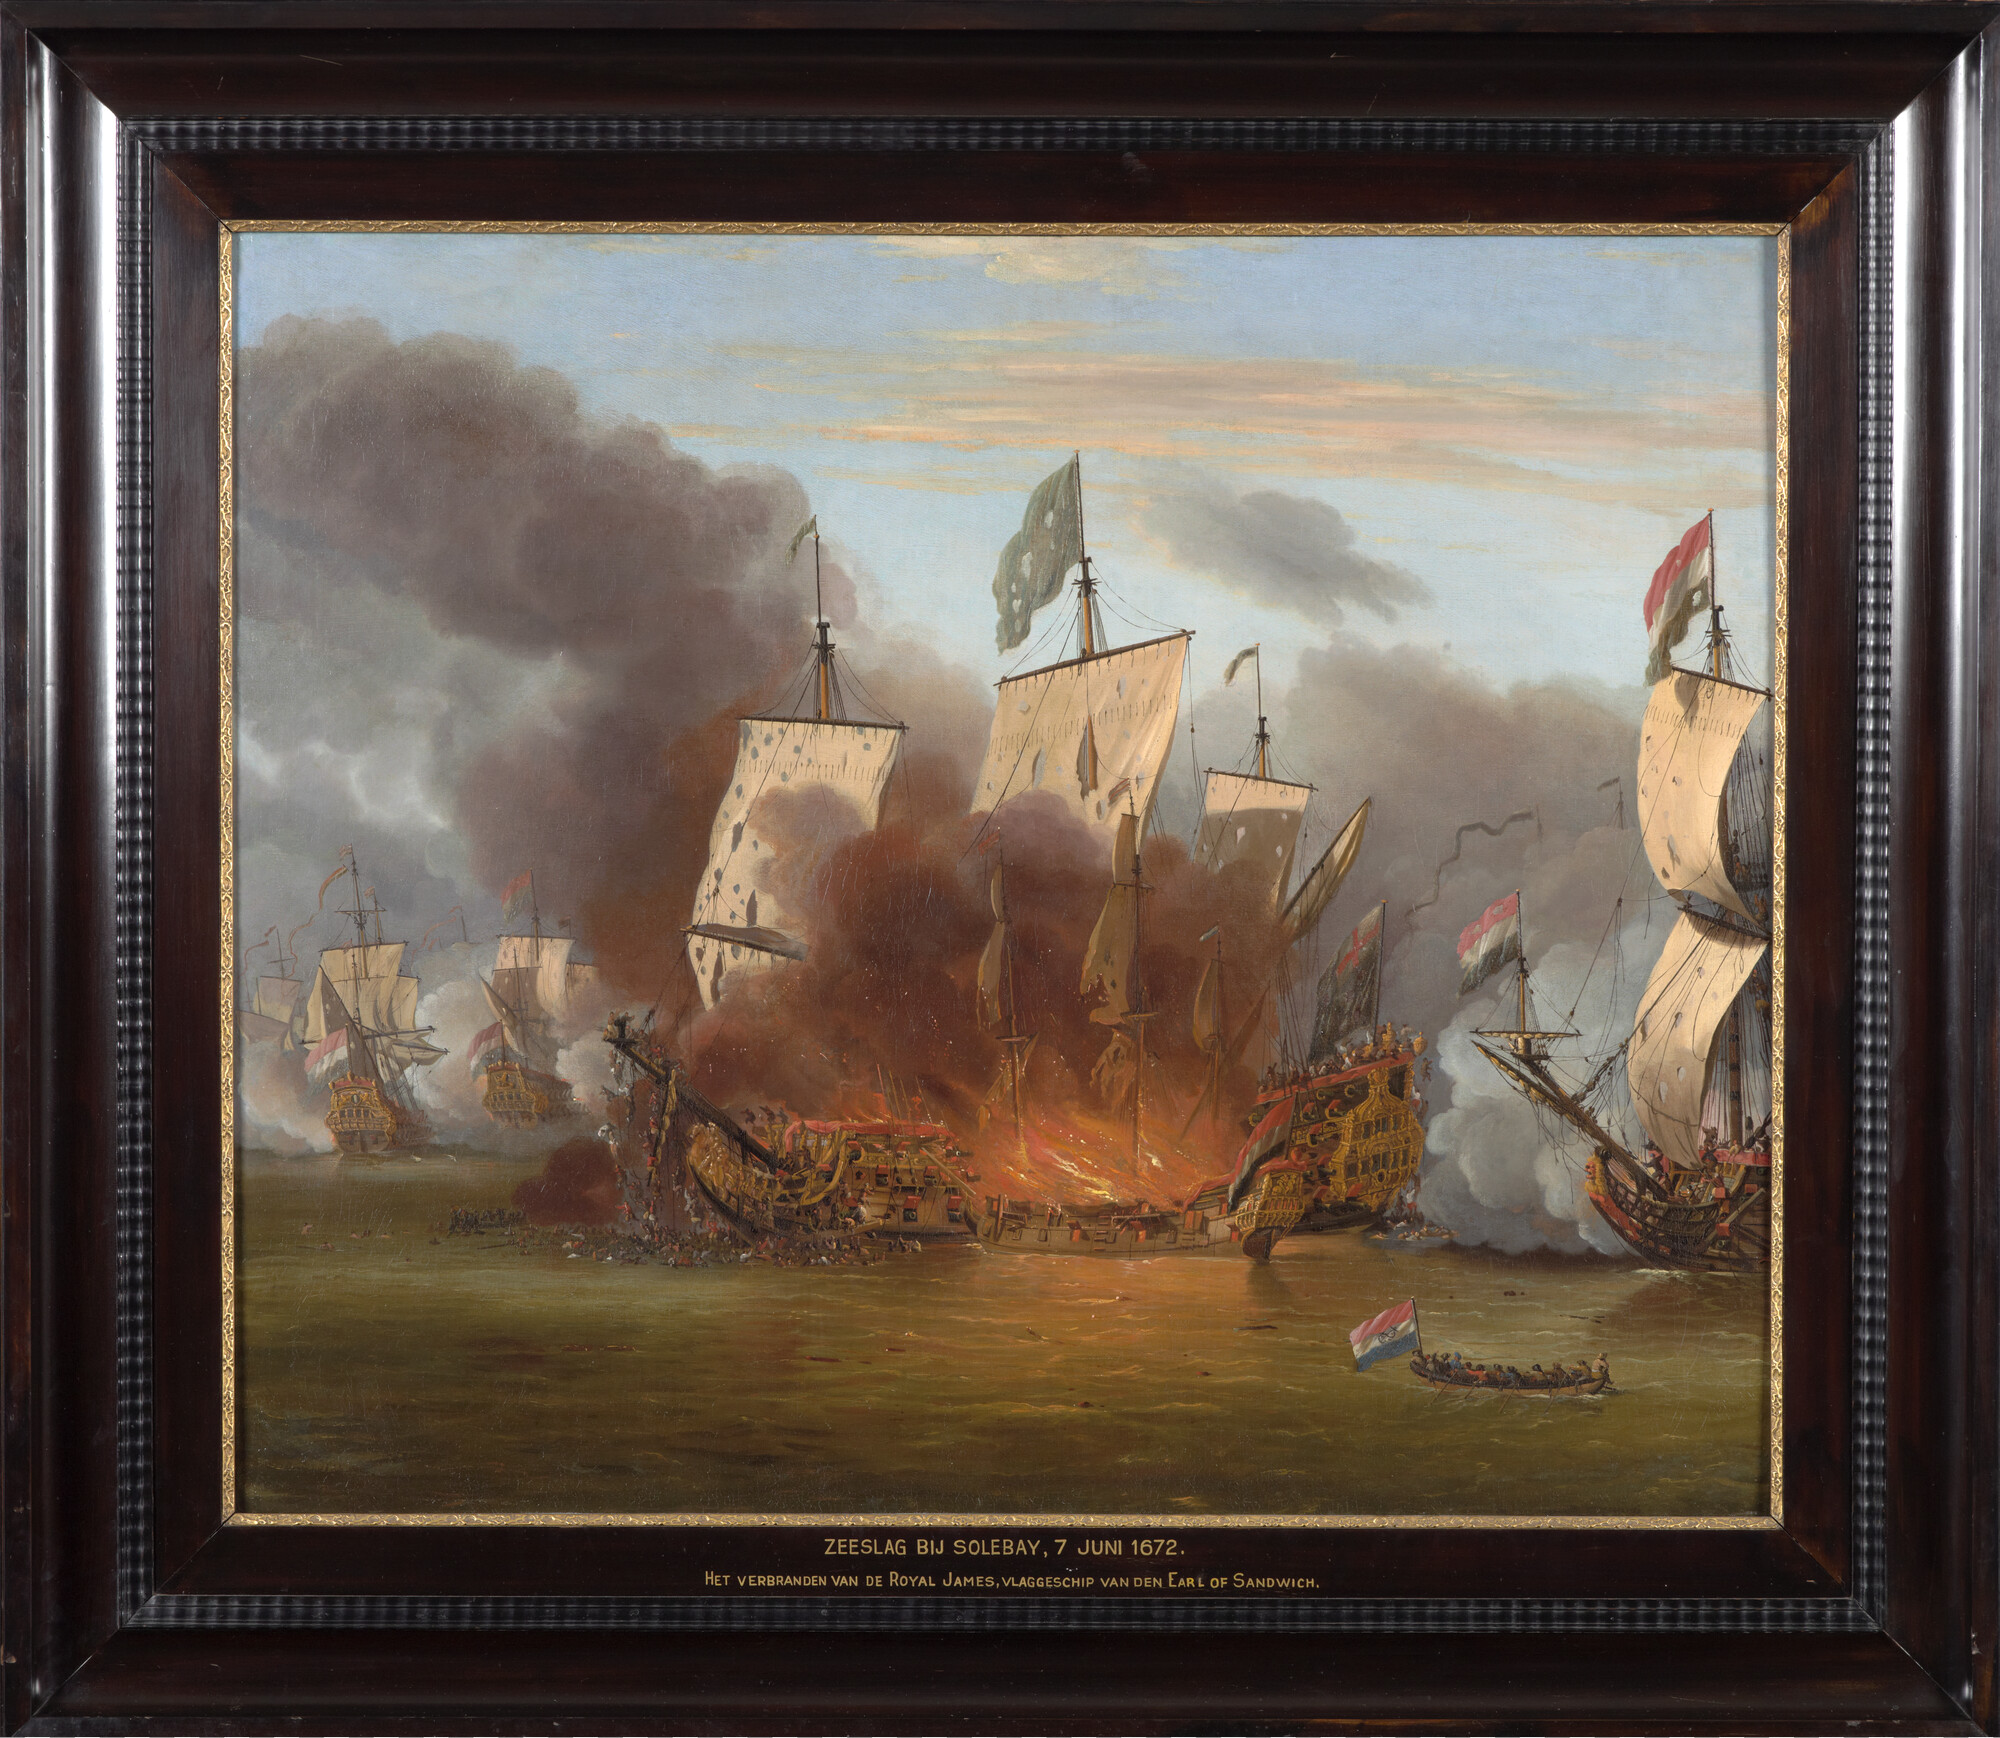 A.0004; Zeeslag bij Solebay, 7 juni 1672; schilderij